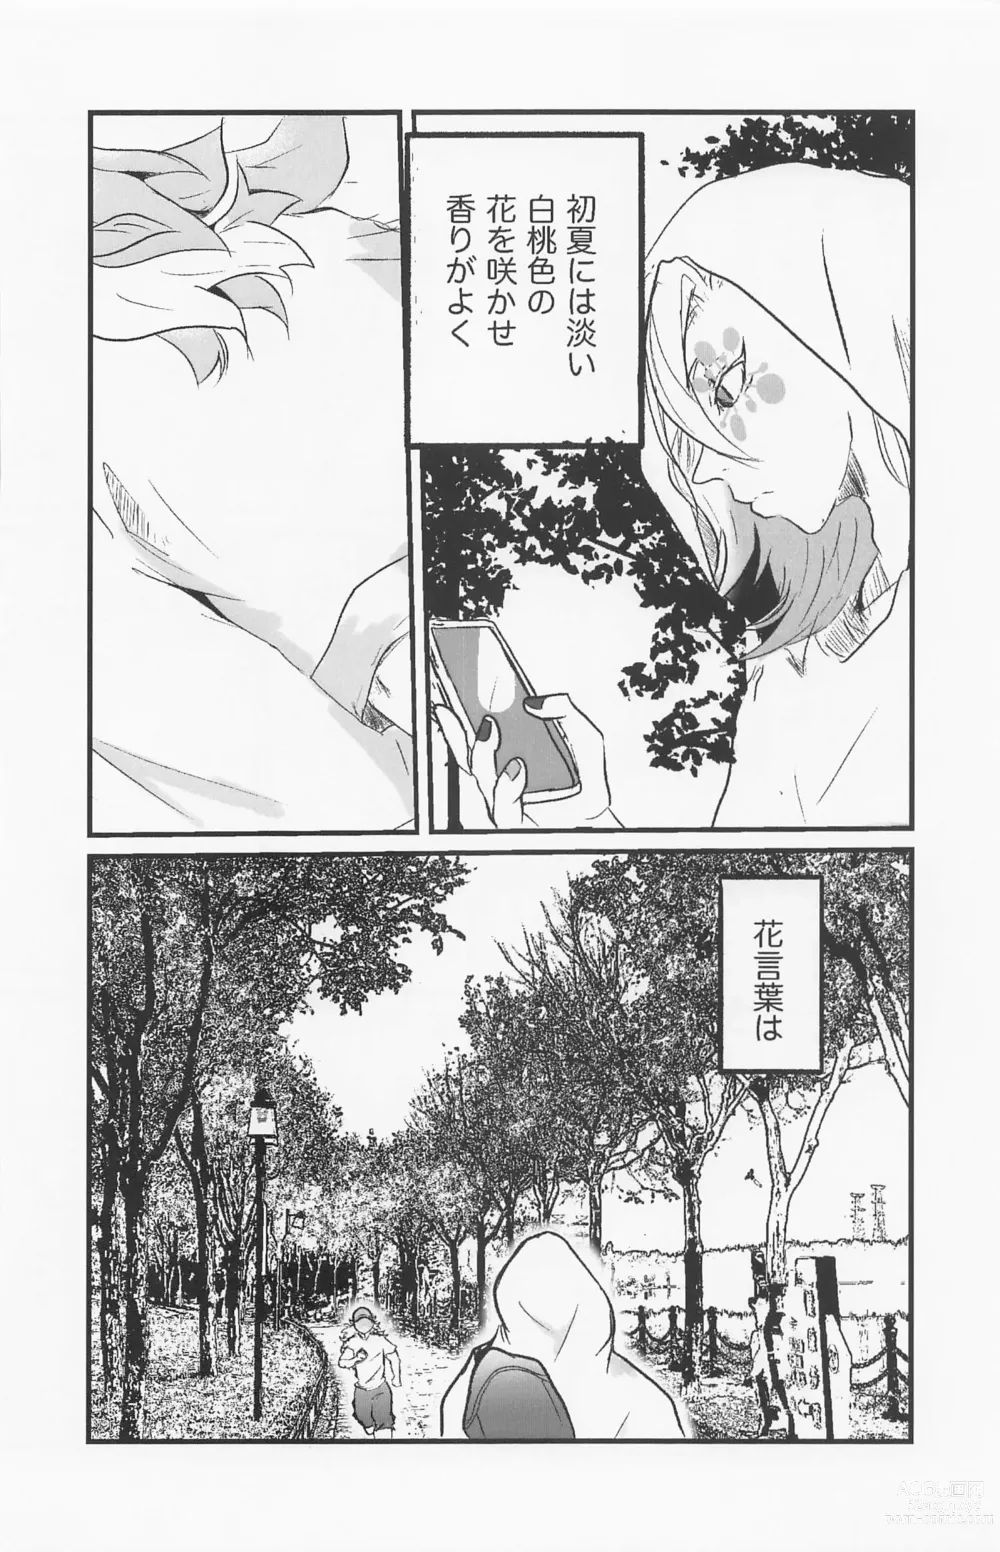 Page 31 of doujinshi Kimi to Tayasuku Neru Koto